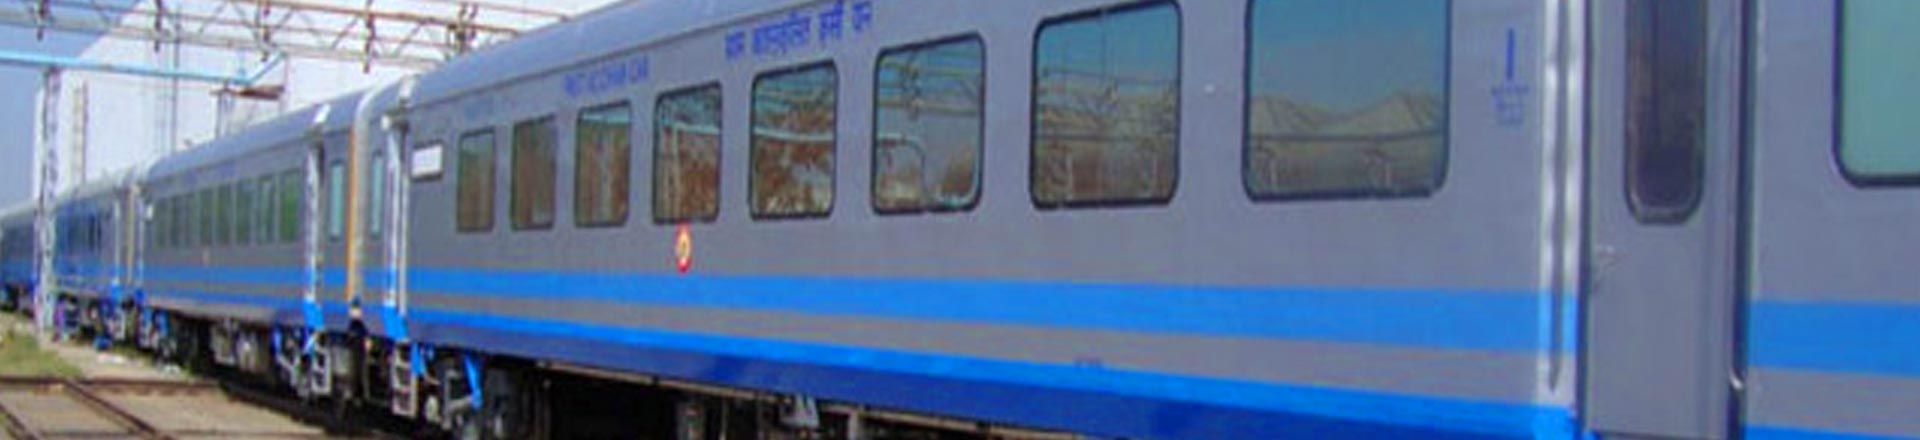 One Day Agra Trip by Train